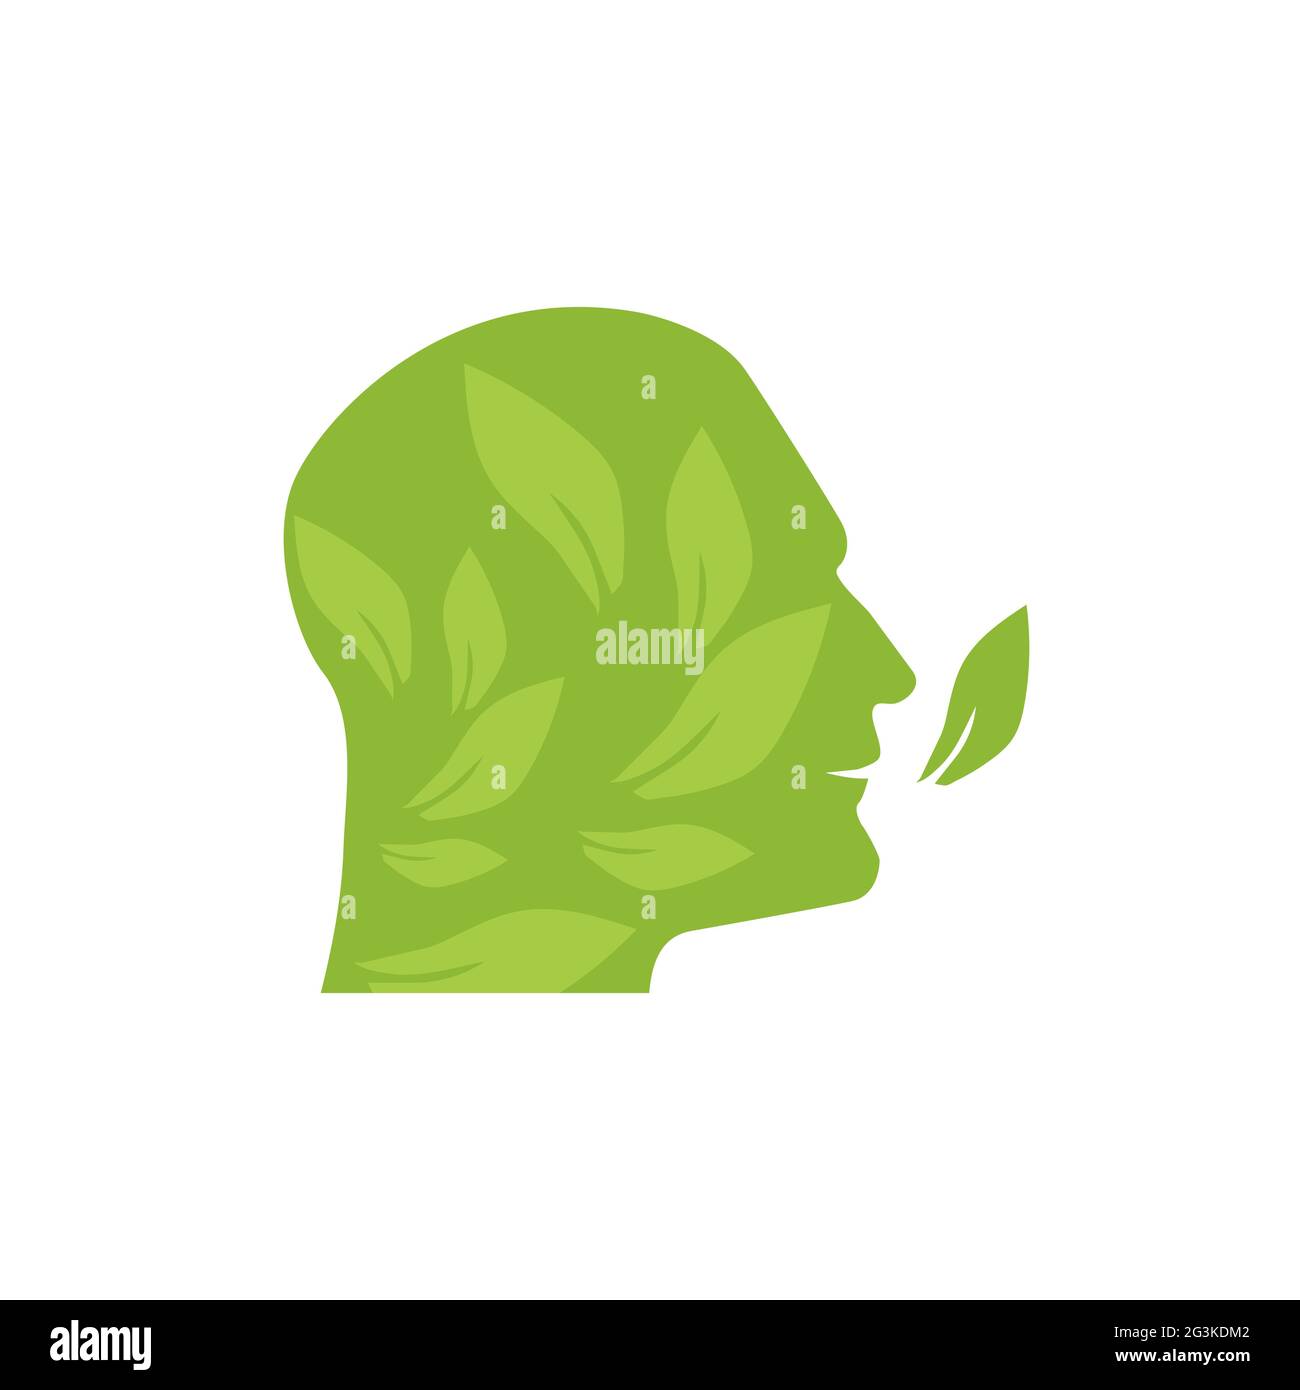 Illustration mit ökologischer Zielsetzung, denken Sie grün, helfen Sie der Umwelt Stockfoto